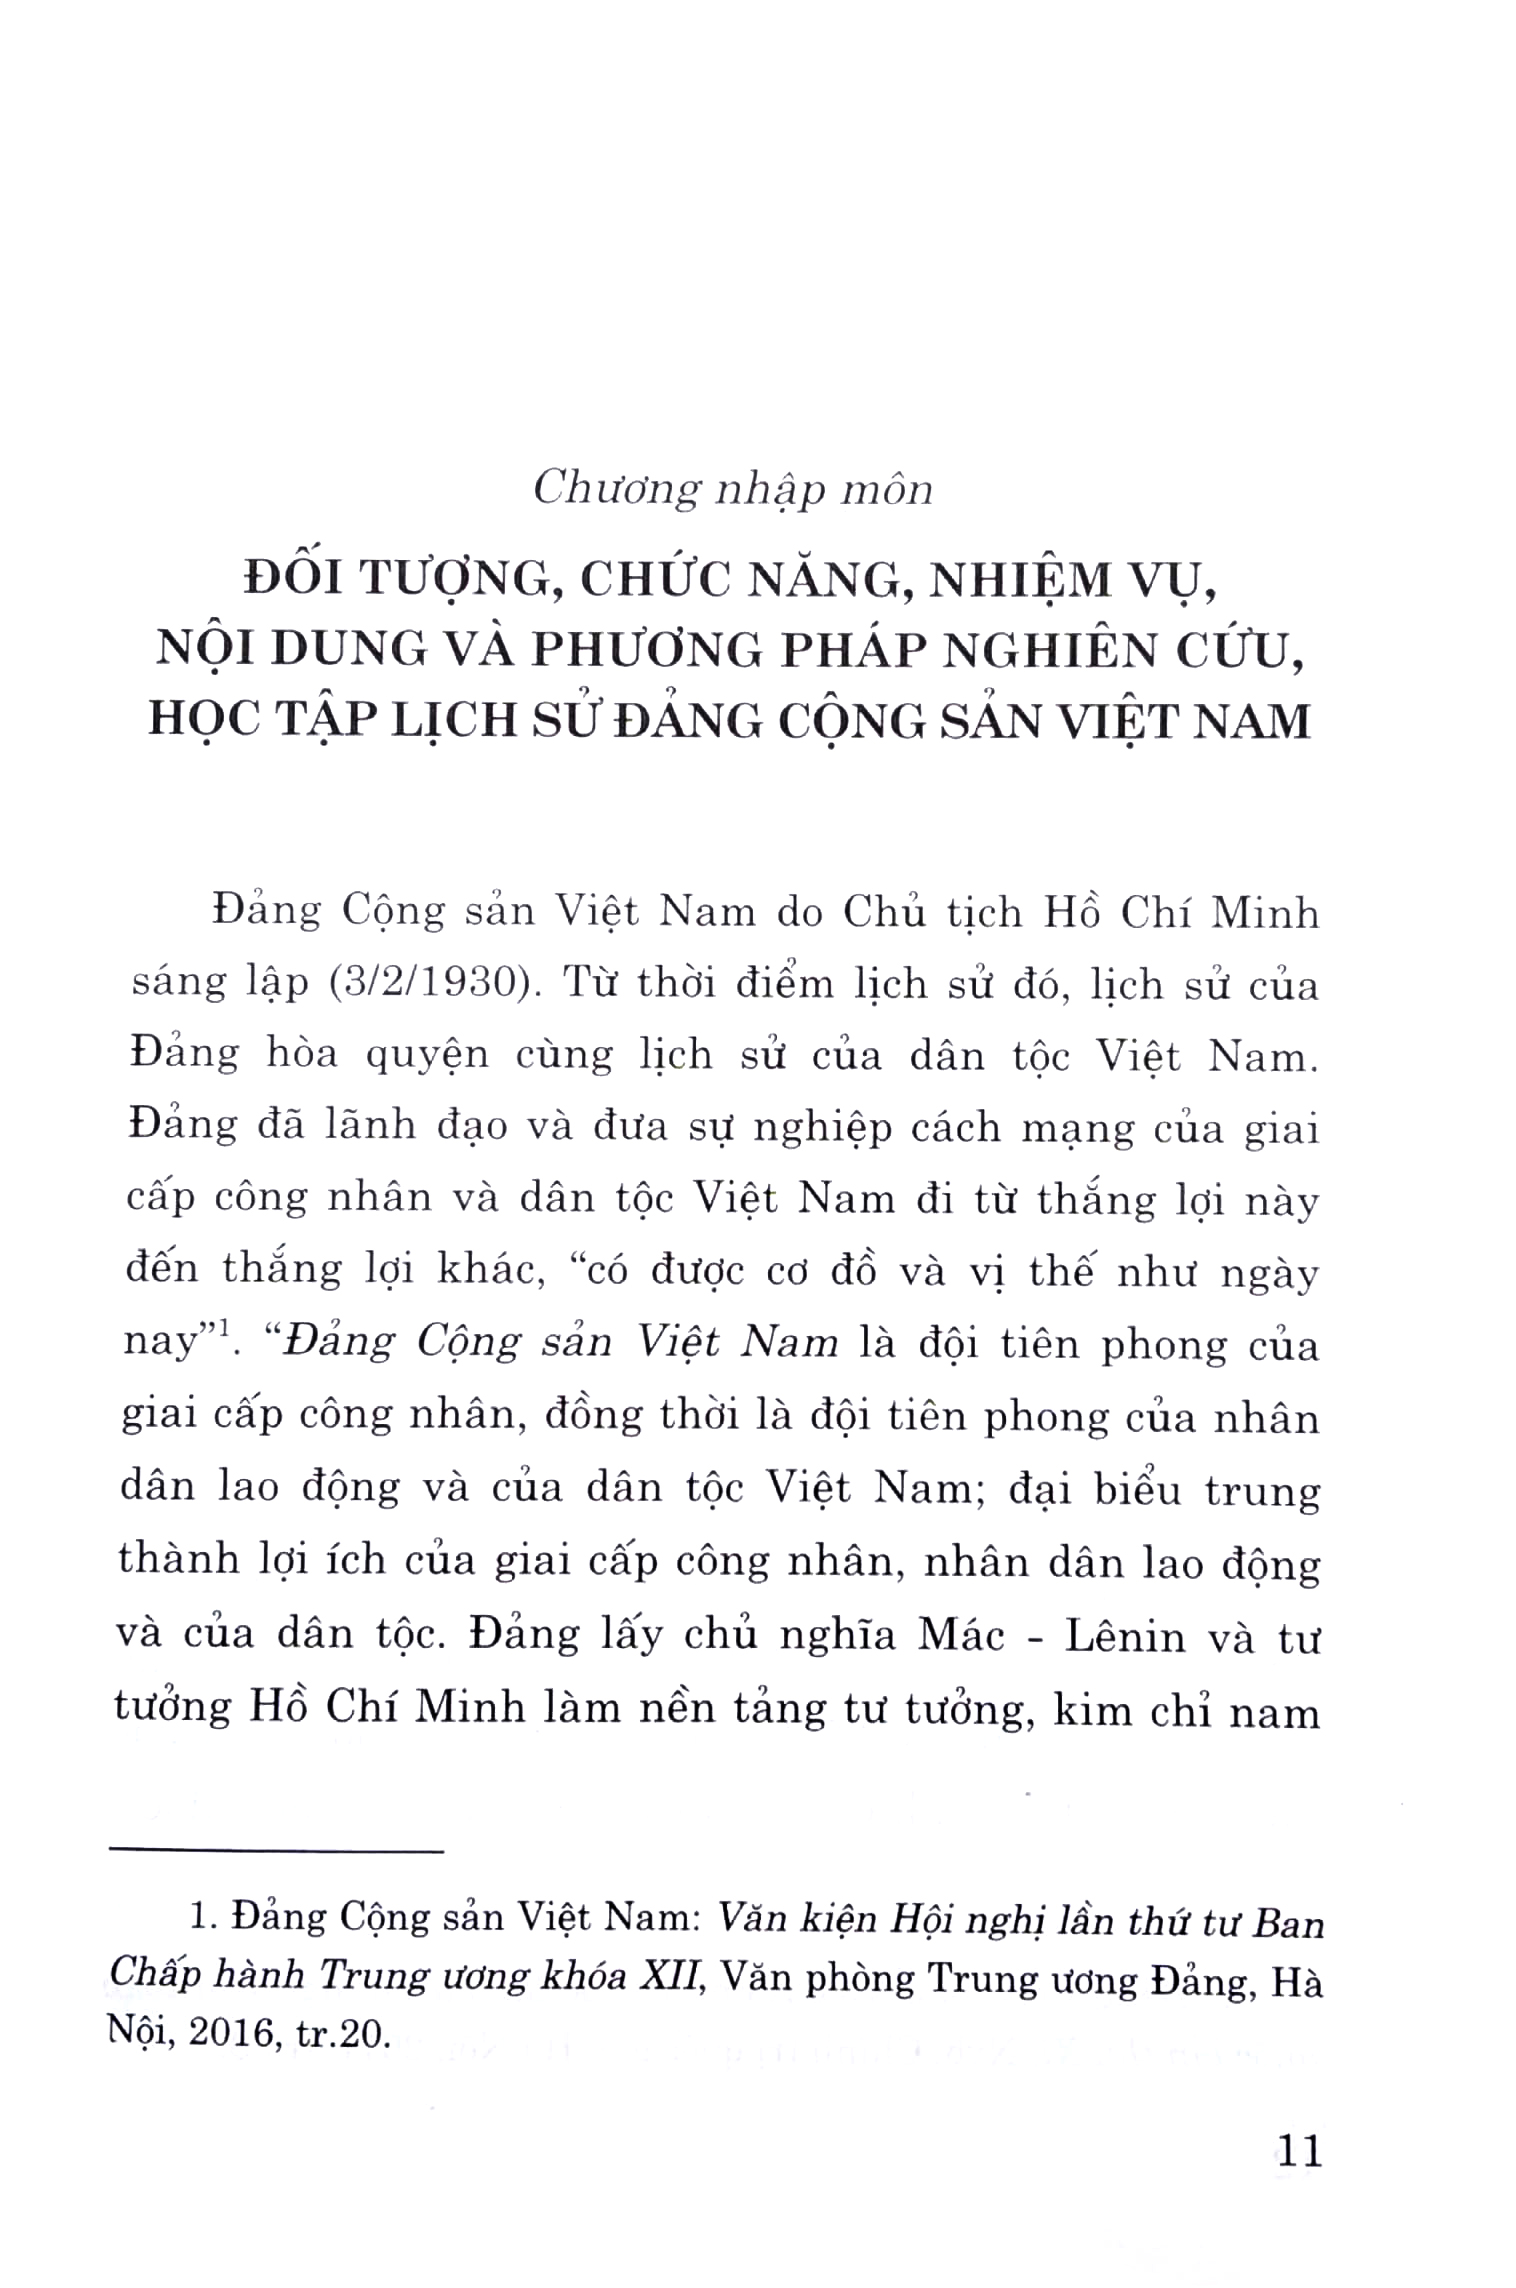 Giáo Trình Lịch Sử Đảng Cộng Sản Việt Nam Dành Cho Bậc Đại Học Hệ Không Chuyên Lý Luận Chính Trị PDF